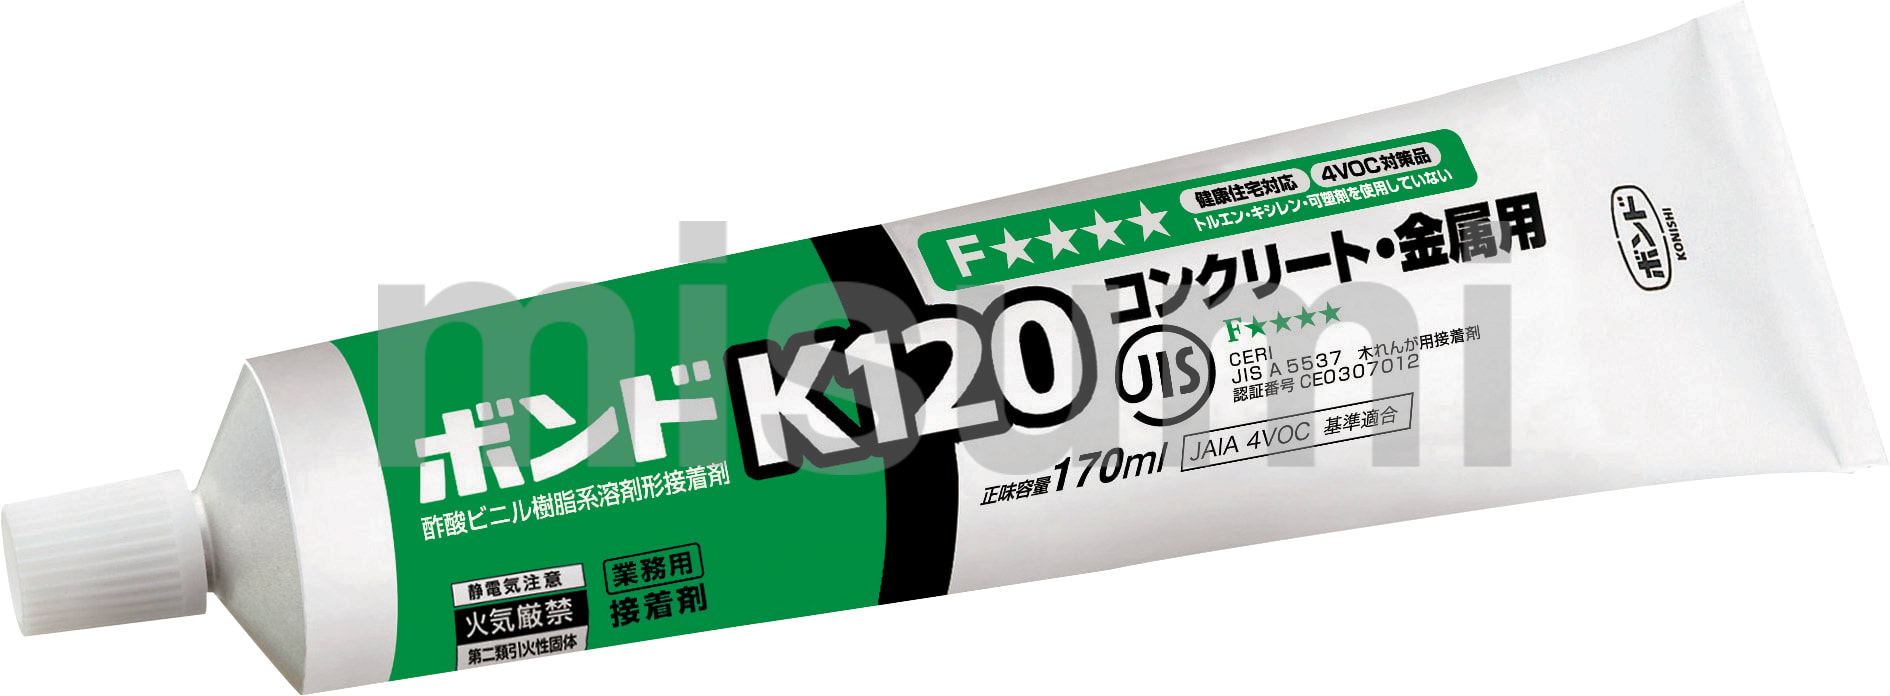 レビュー ボンド K120 コンクリート・金属用 コニシ MISUMI(ミスミ)